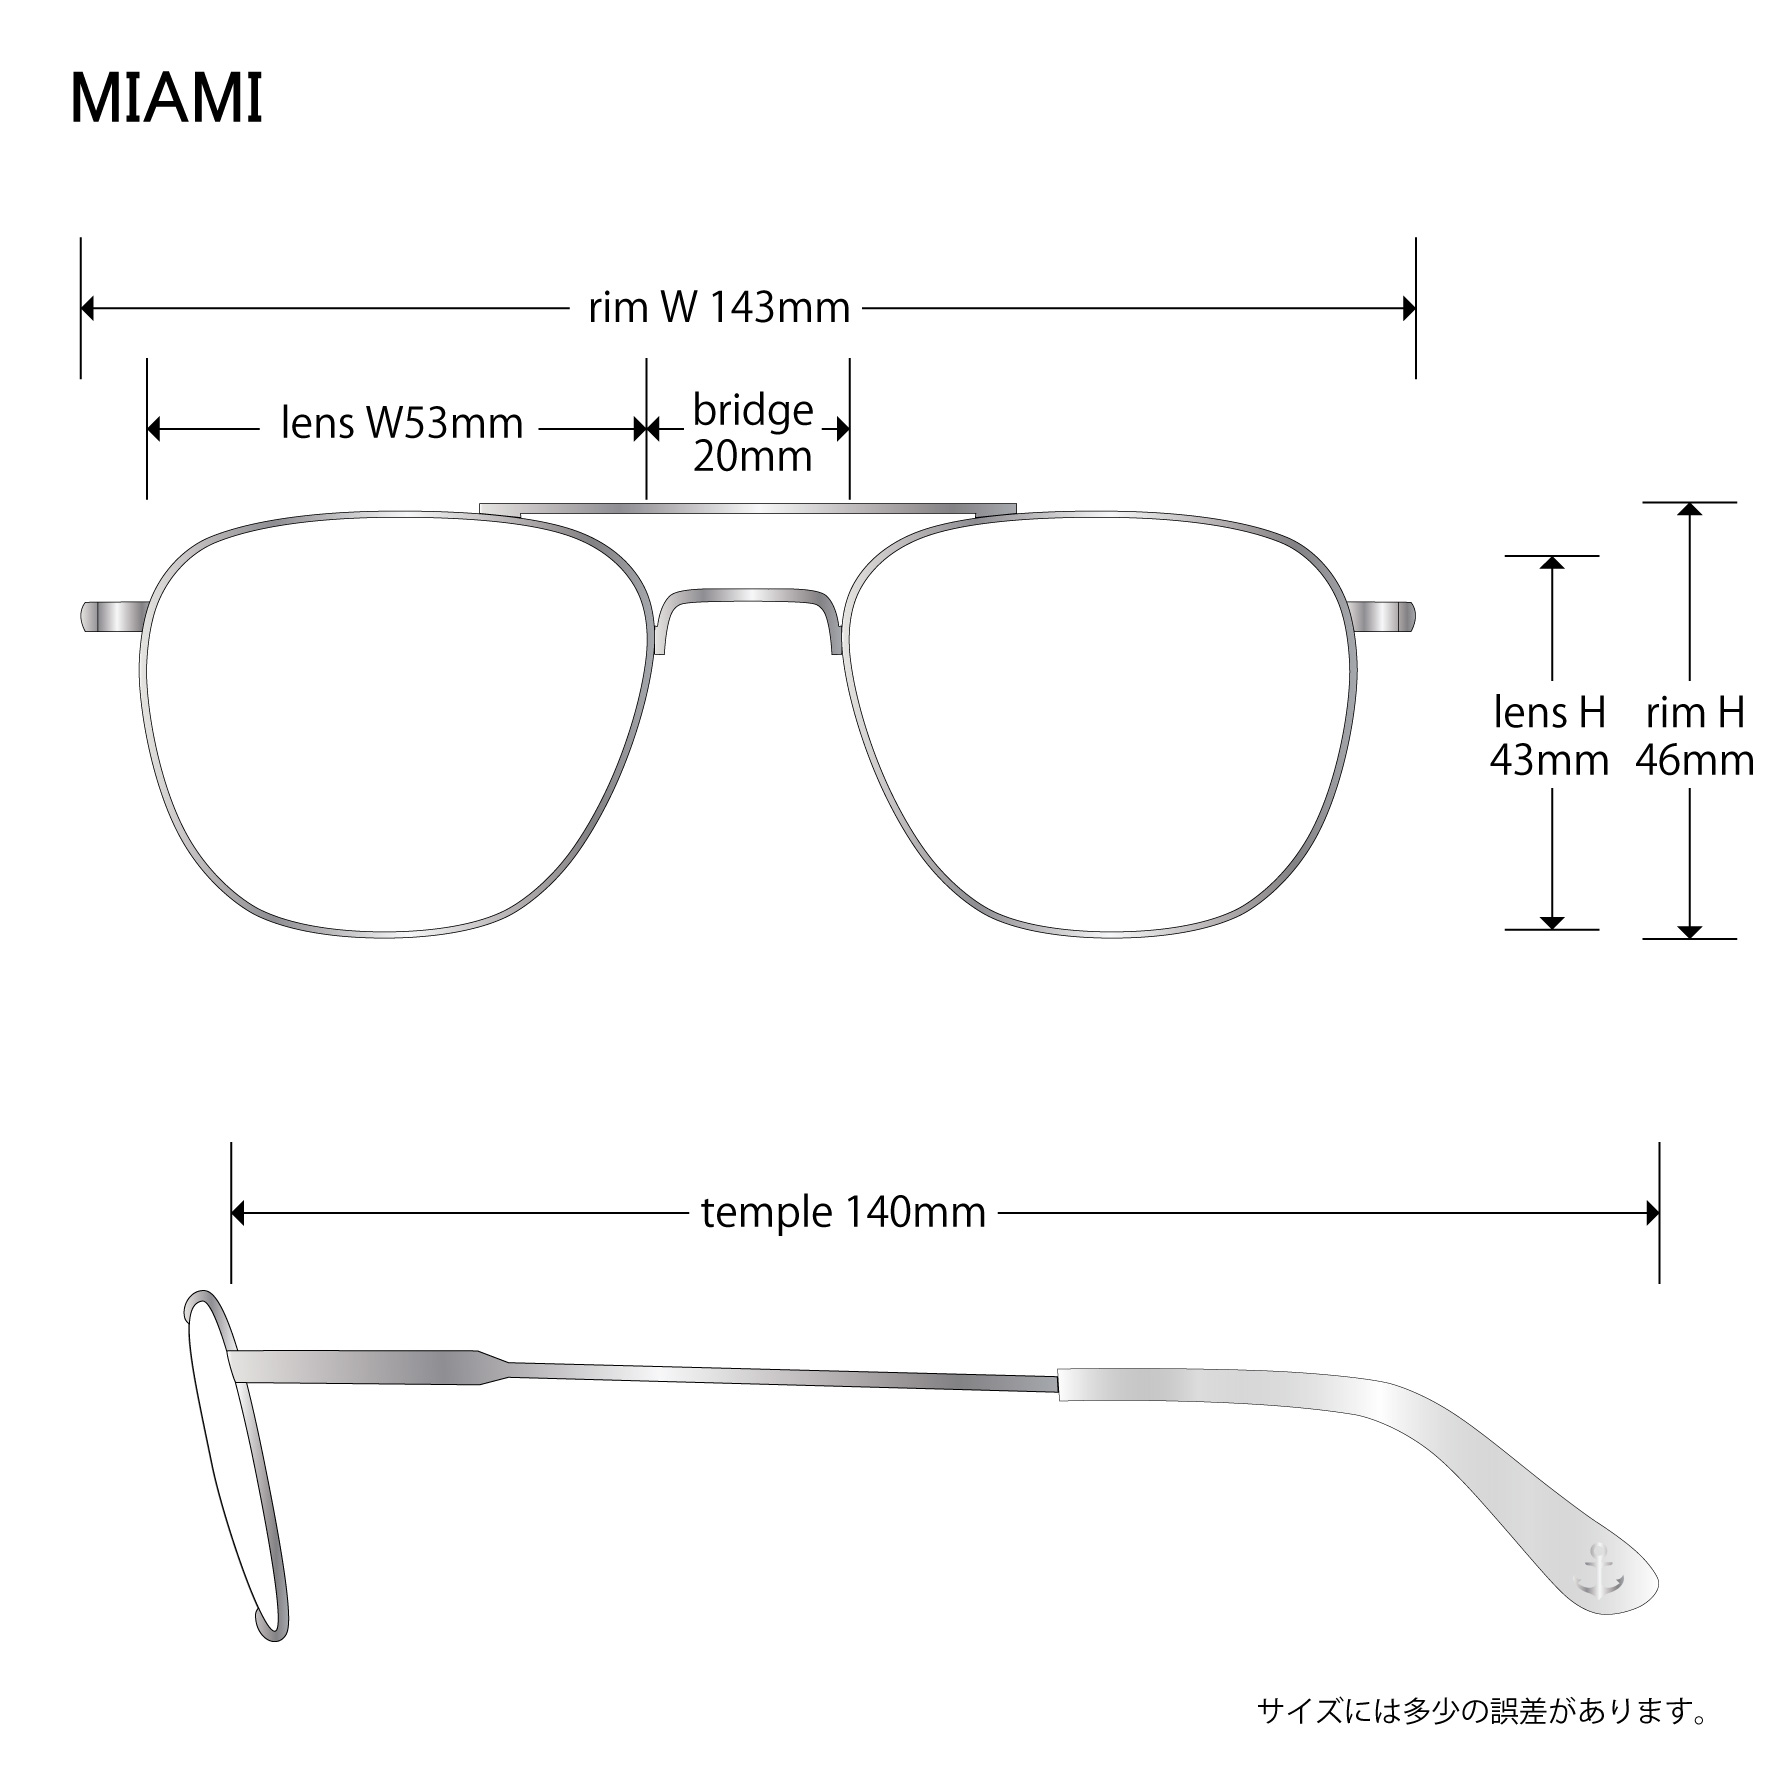 画像: EVILACT eyewear (イーヴルアクト アイウェア) | “MIAMI” 